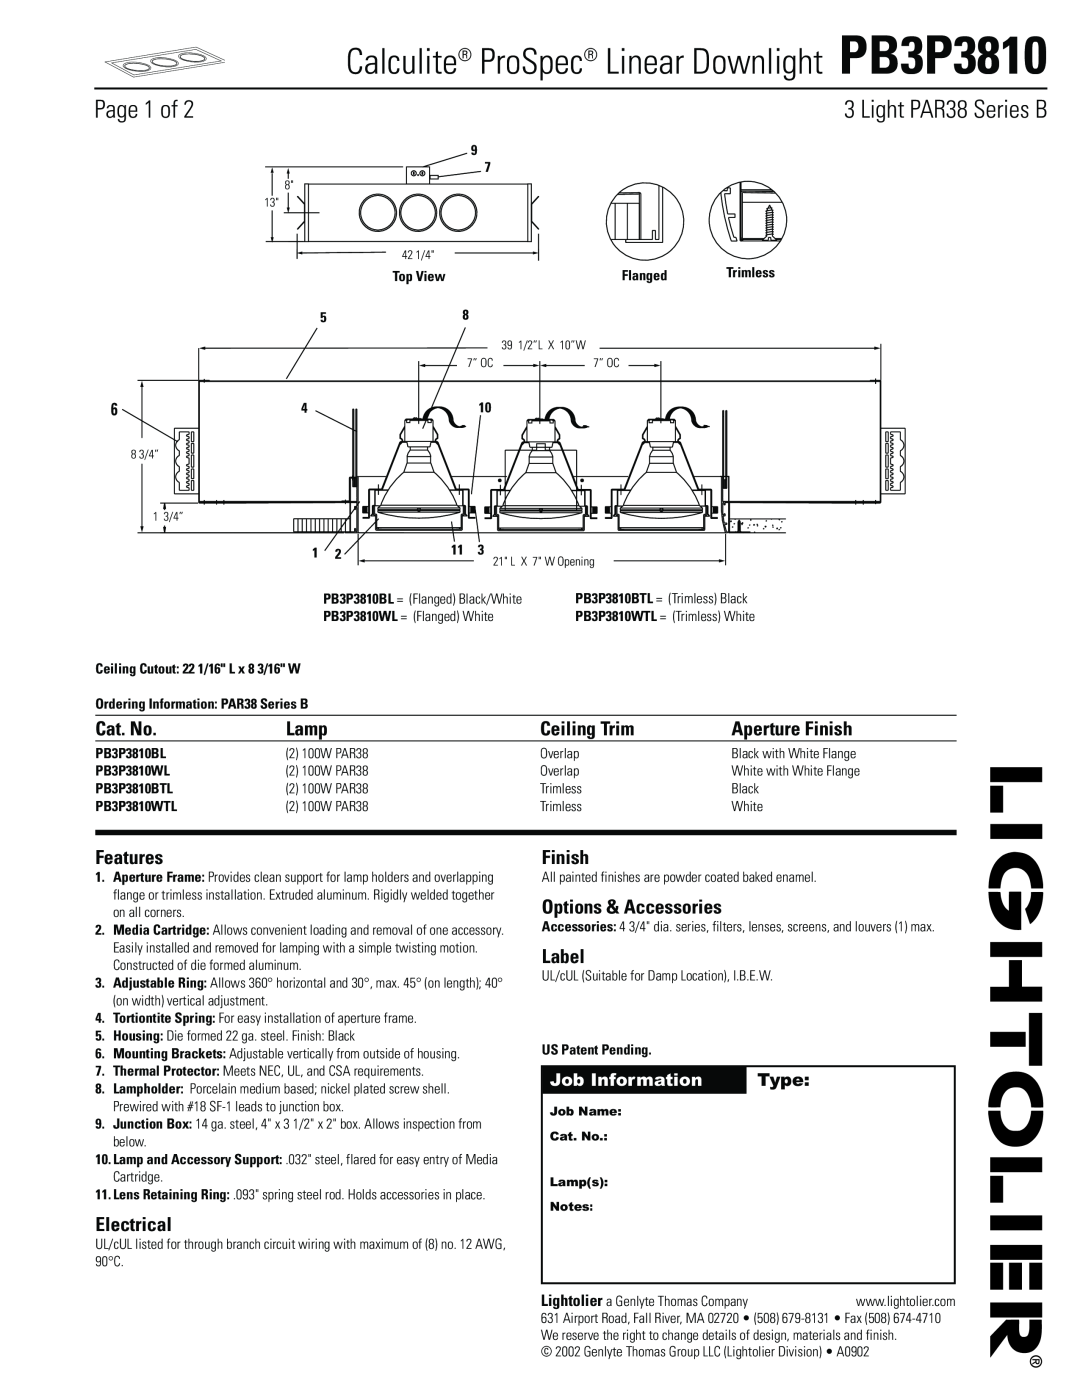 Lightolier PB3P3810 manual Light PAR38 Series B, Cat. No, Lamp, Ceiling Trim, Aperture Finish, Features, Electrical, Label 